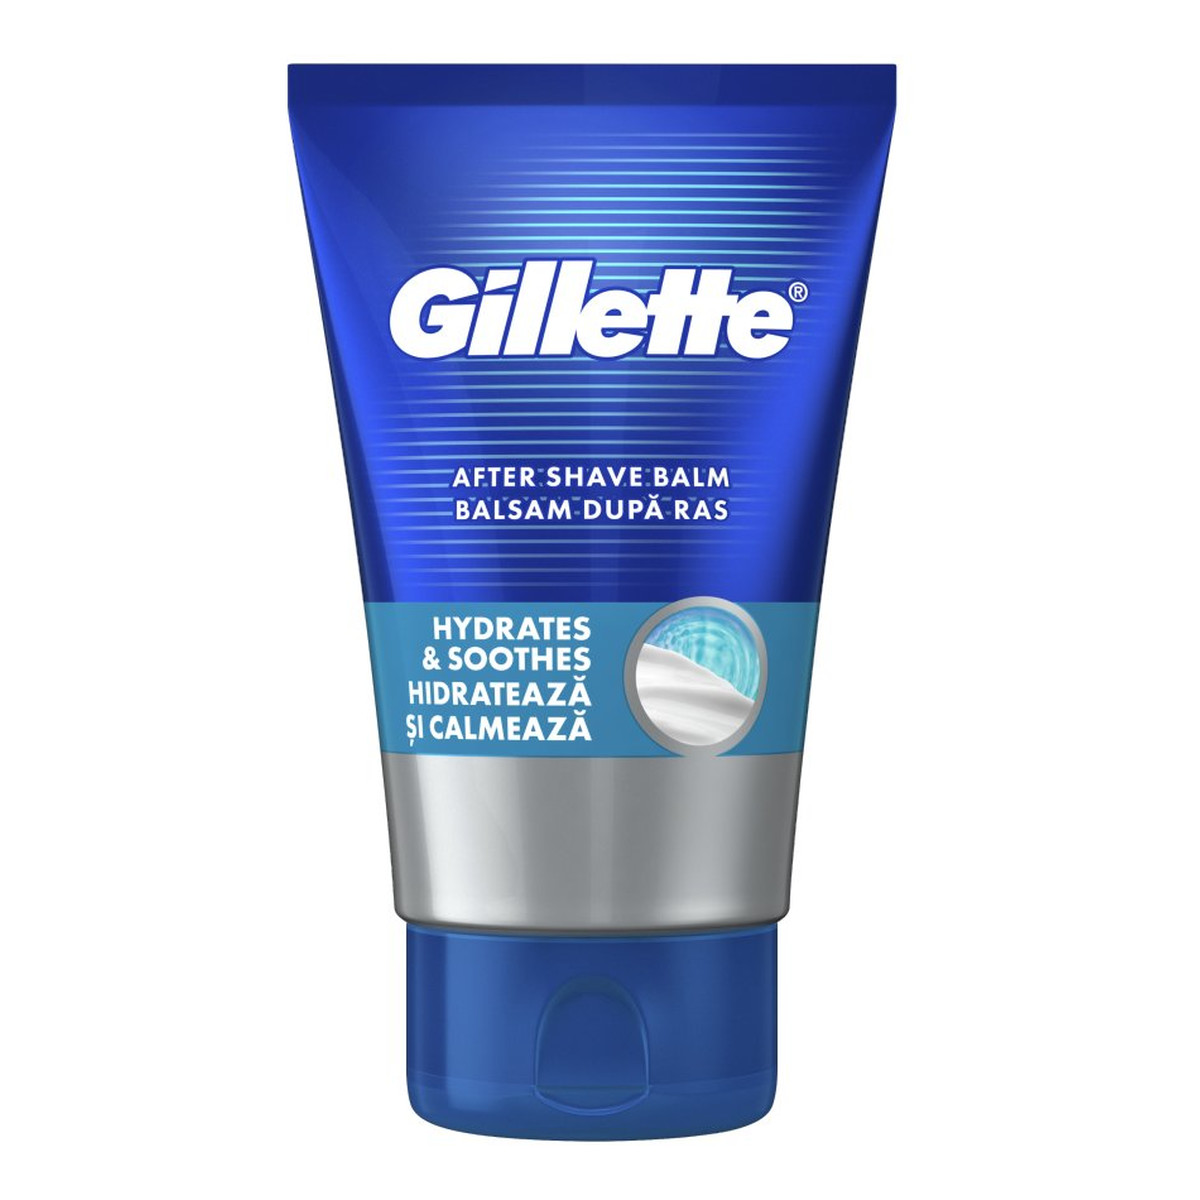 Gillette Hydrates & Soothes After Shave Balm nawilżający i kojący Balsam po goleniu 100ml